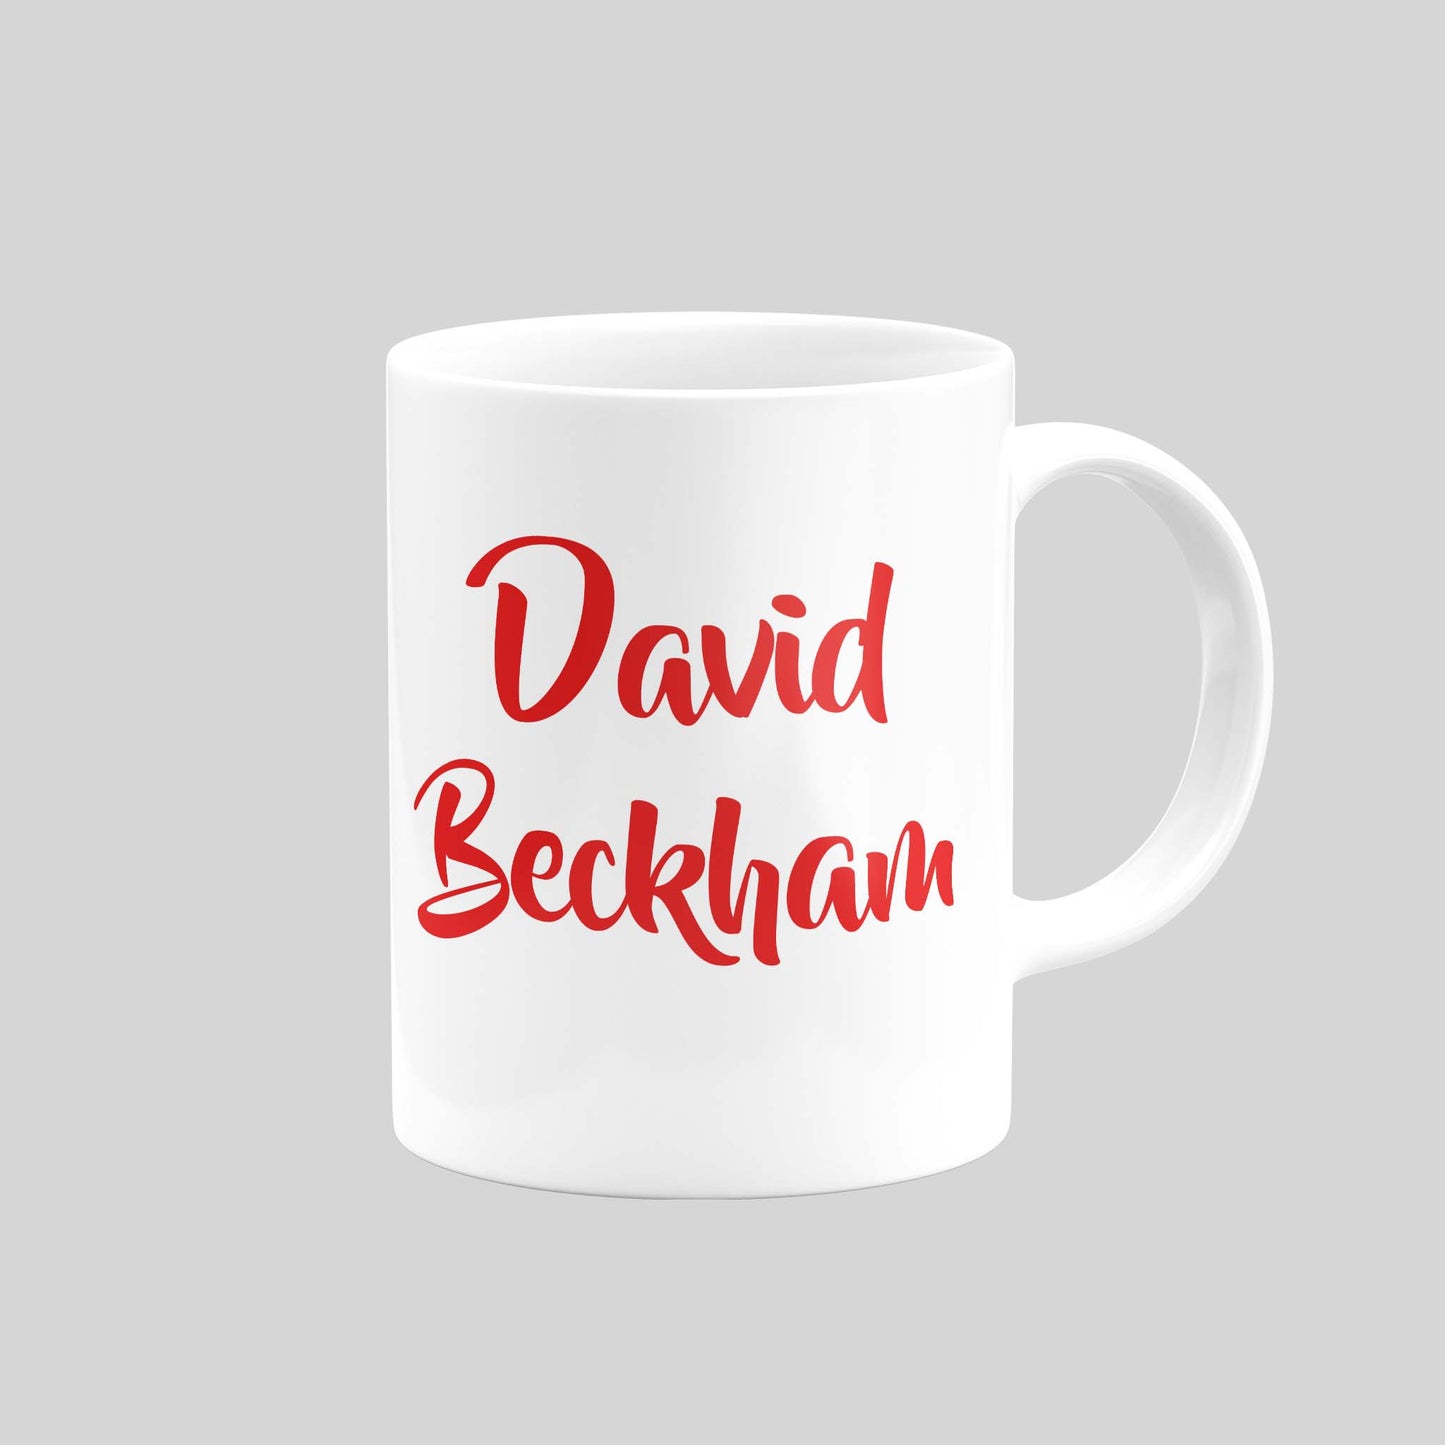 David Beckham Mug